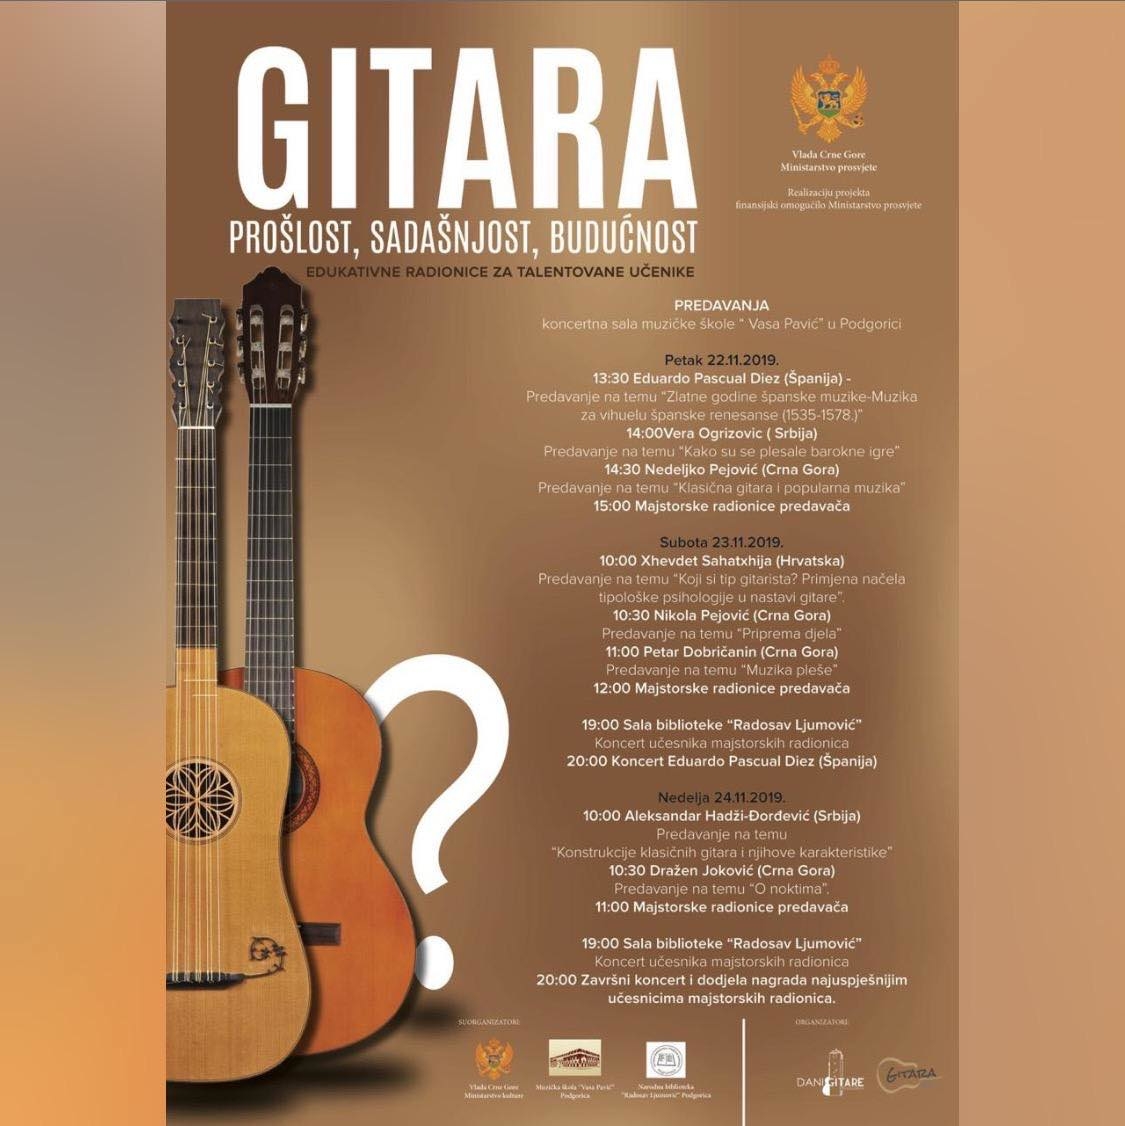 Plakat festivala “Dani gitare u Podgorici”